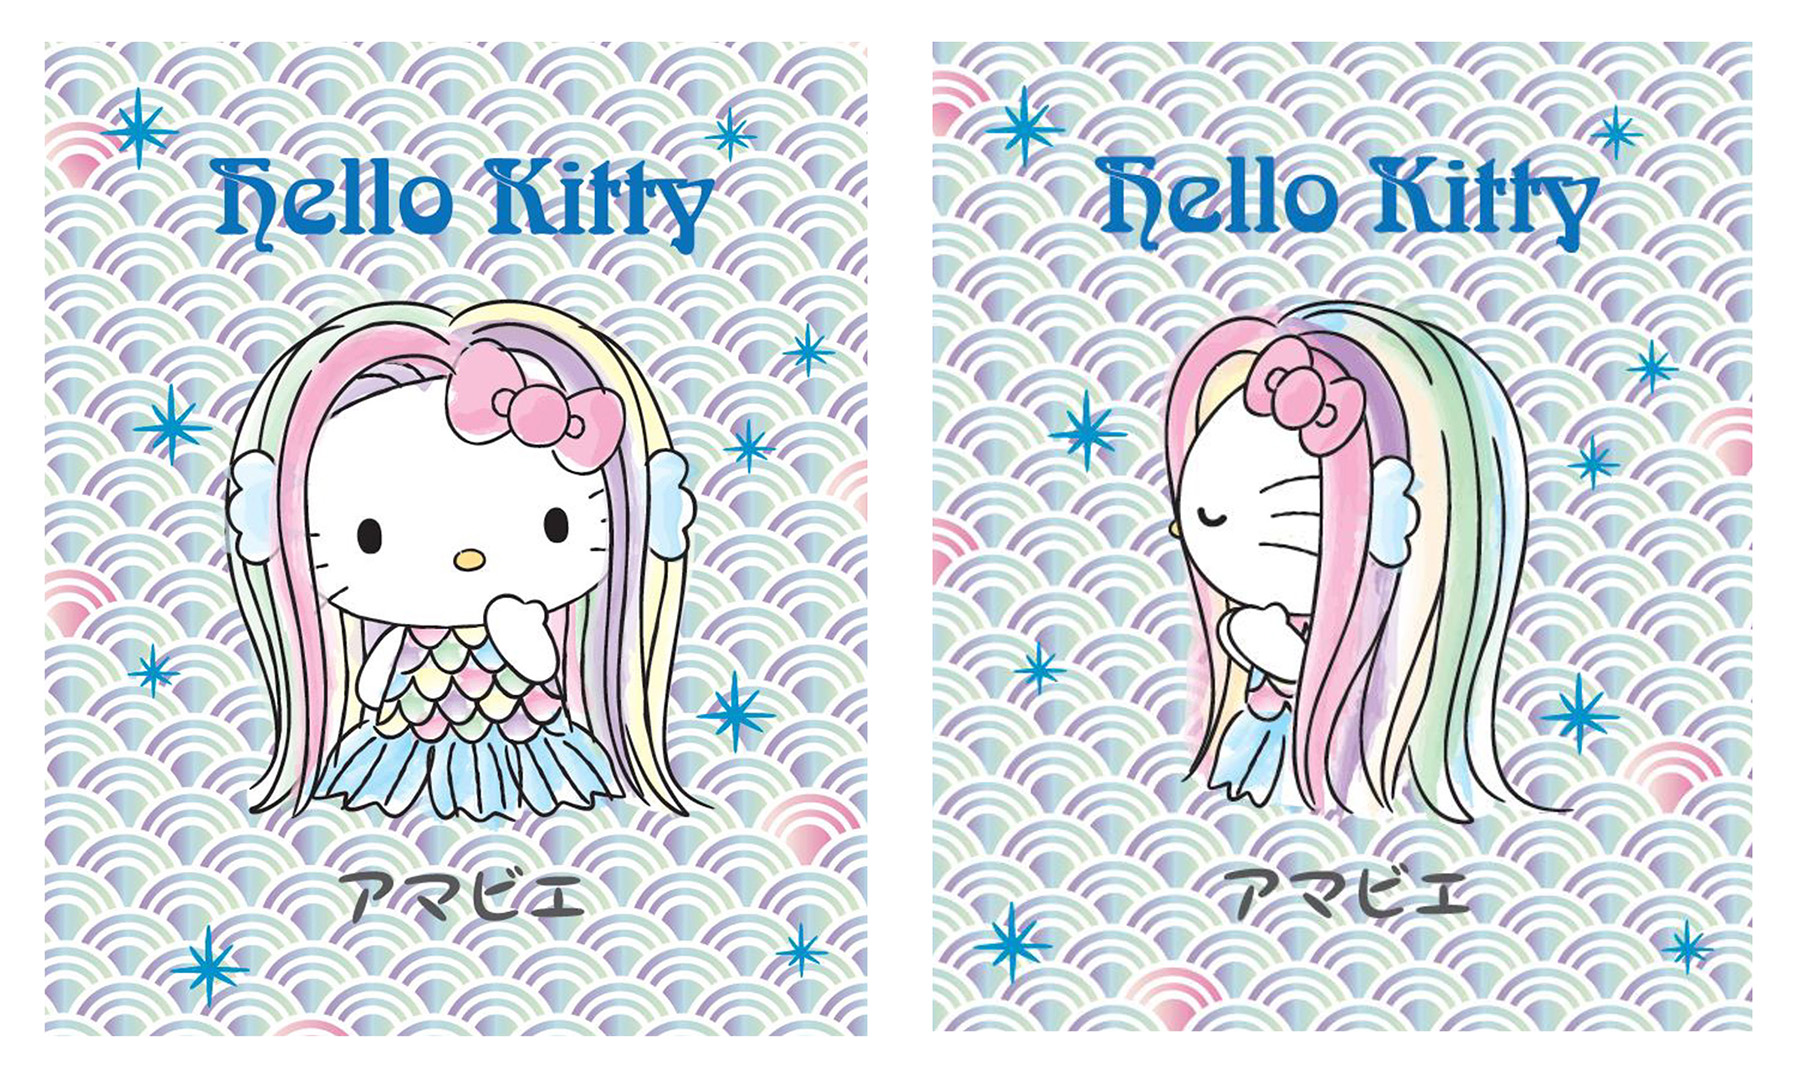 Hello Kitty se une ao youkai Amabie para combater a epidemia para acelerar o fim da pandemia